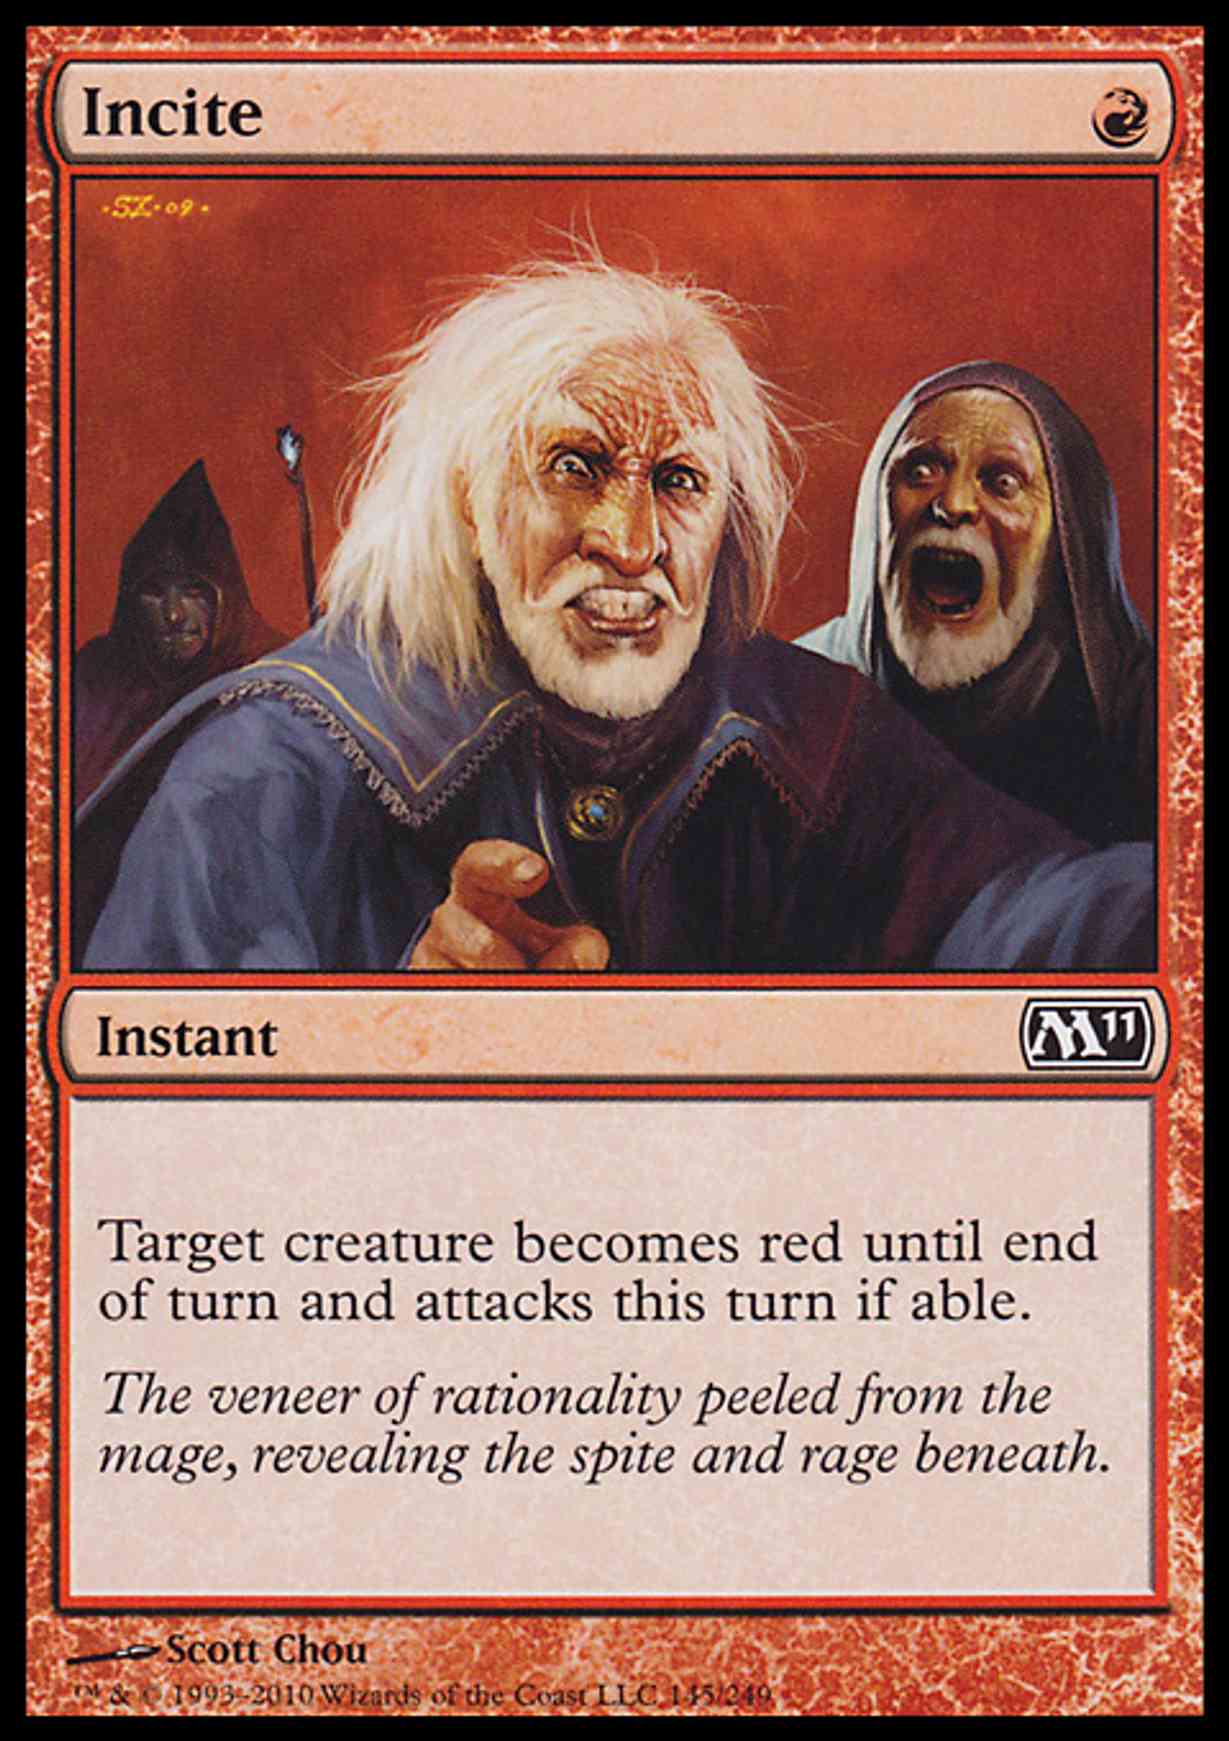 Incite magic card front